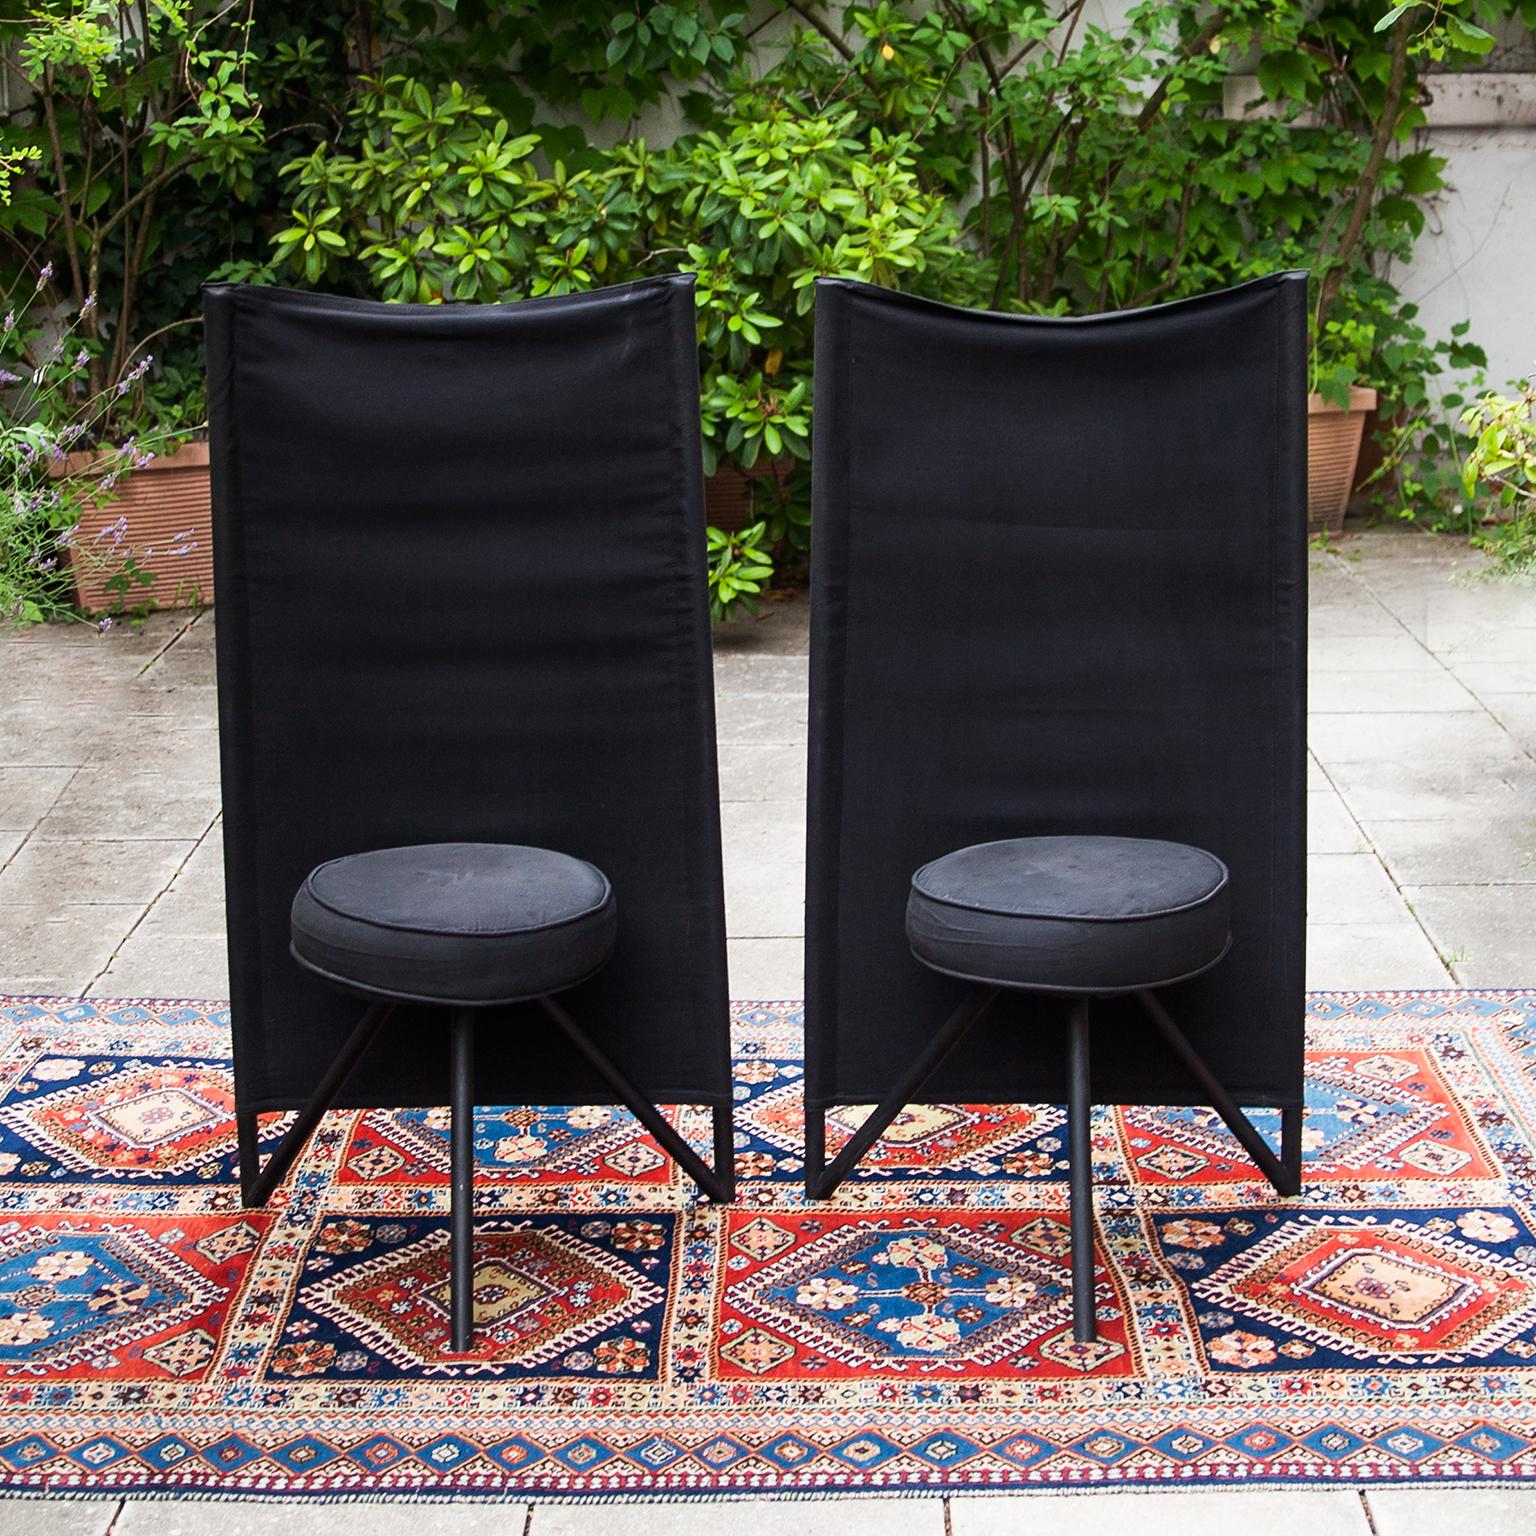 Une chaise rare et de collection conçue par Philippe Starck en 1982 pour Disform. La toile de coton noire est tendue sur deux tubes d'acier verticaux et la tension crée le dossier confortable de la chaise. Le siège est recouvert d'une housse en